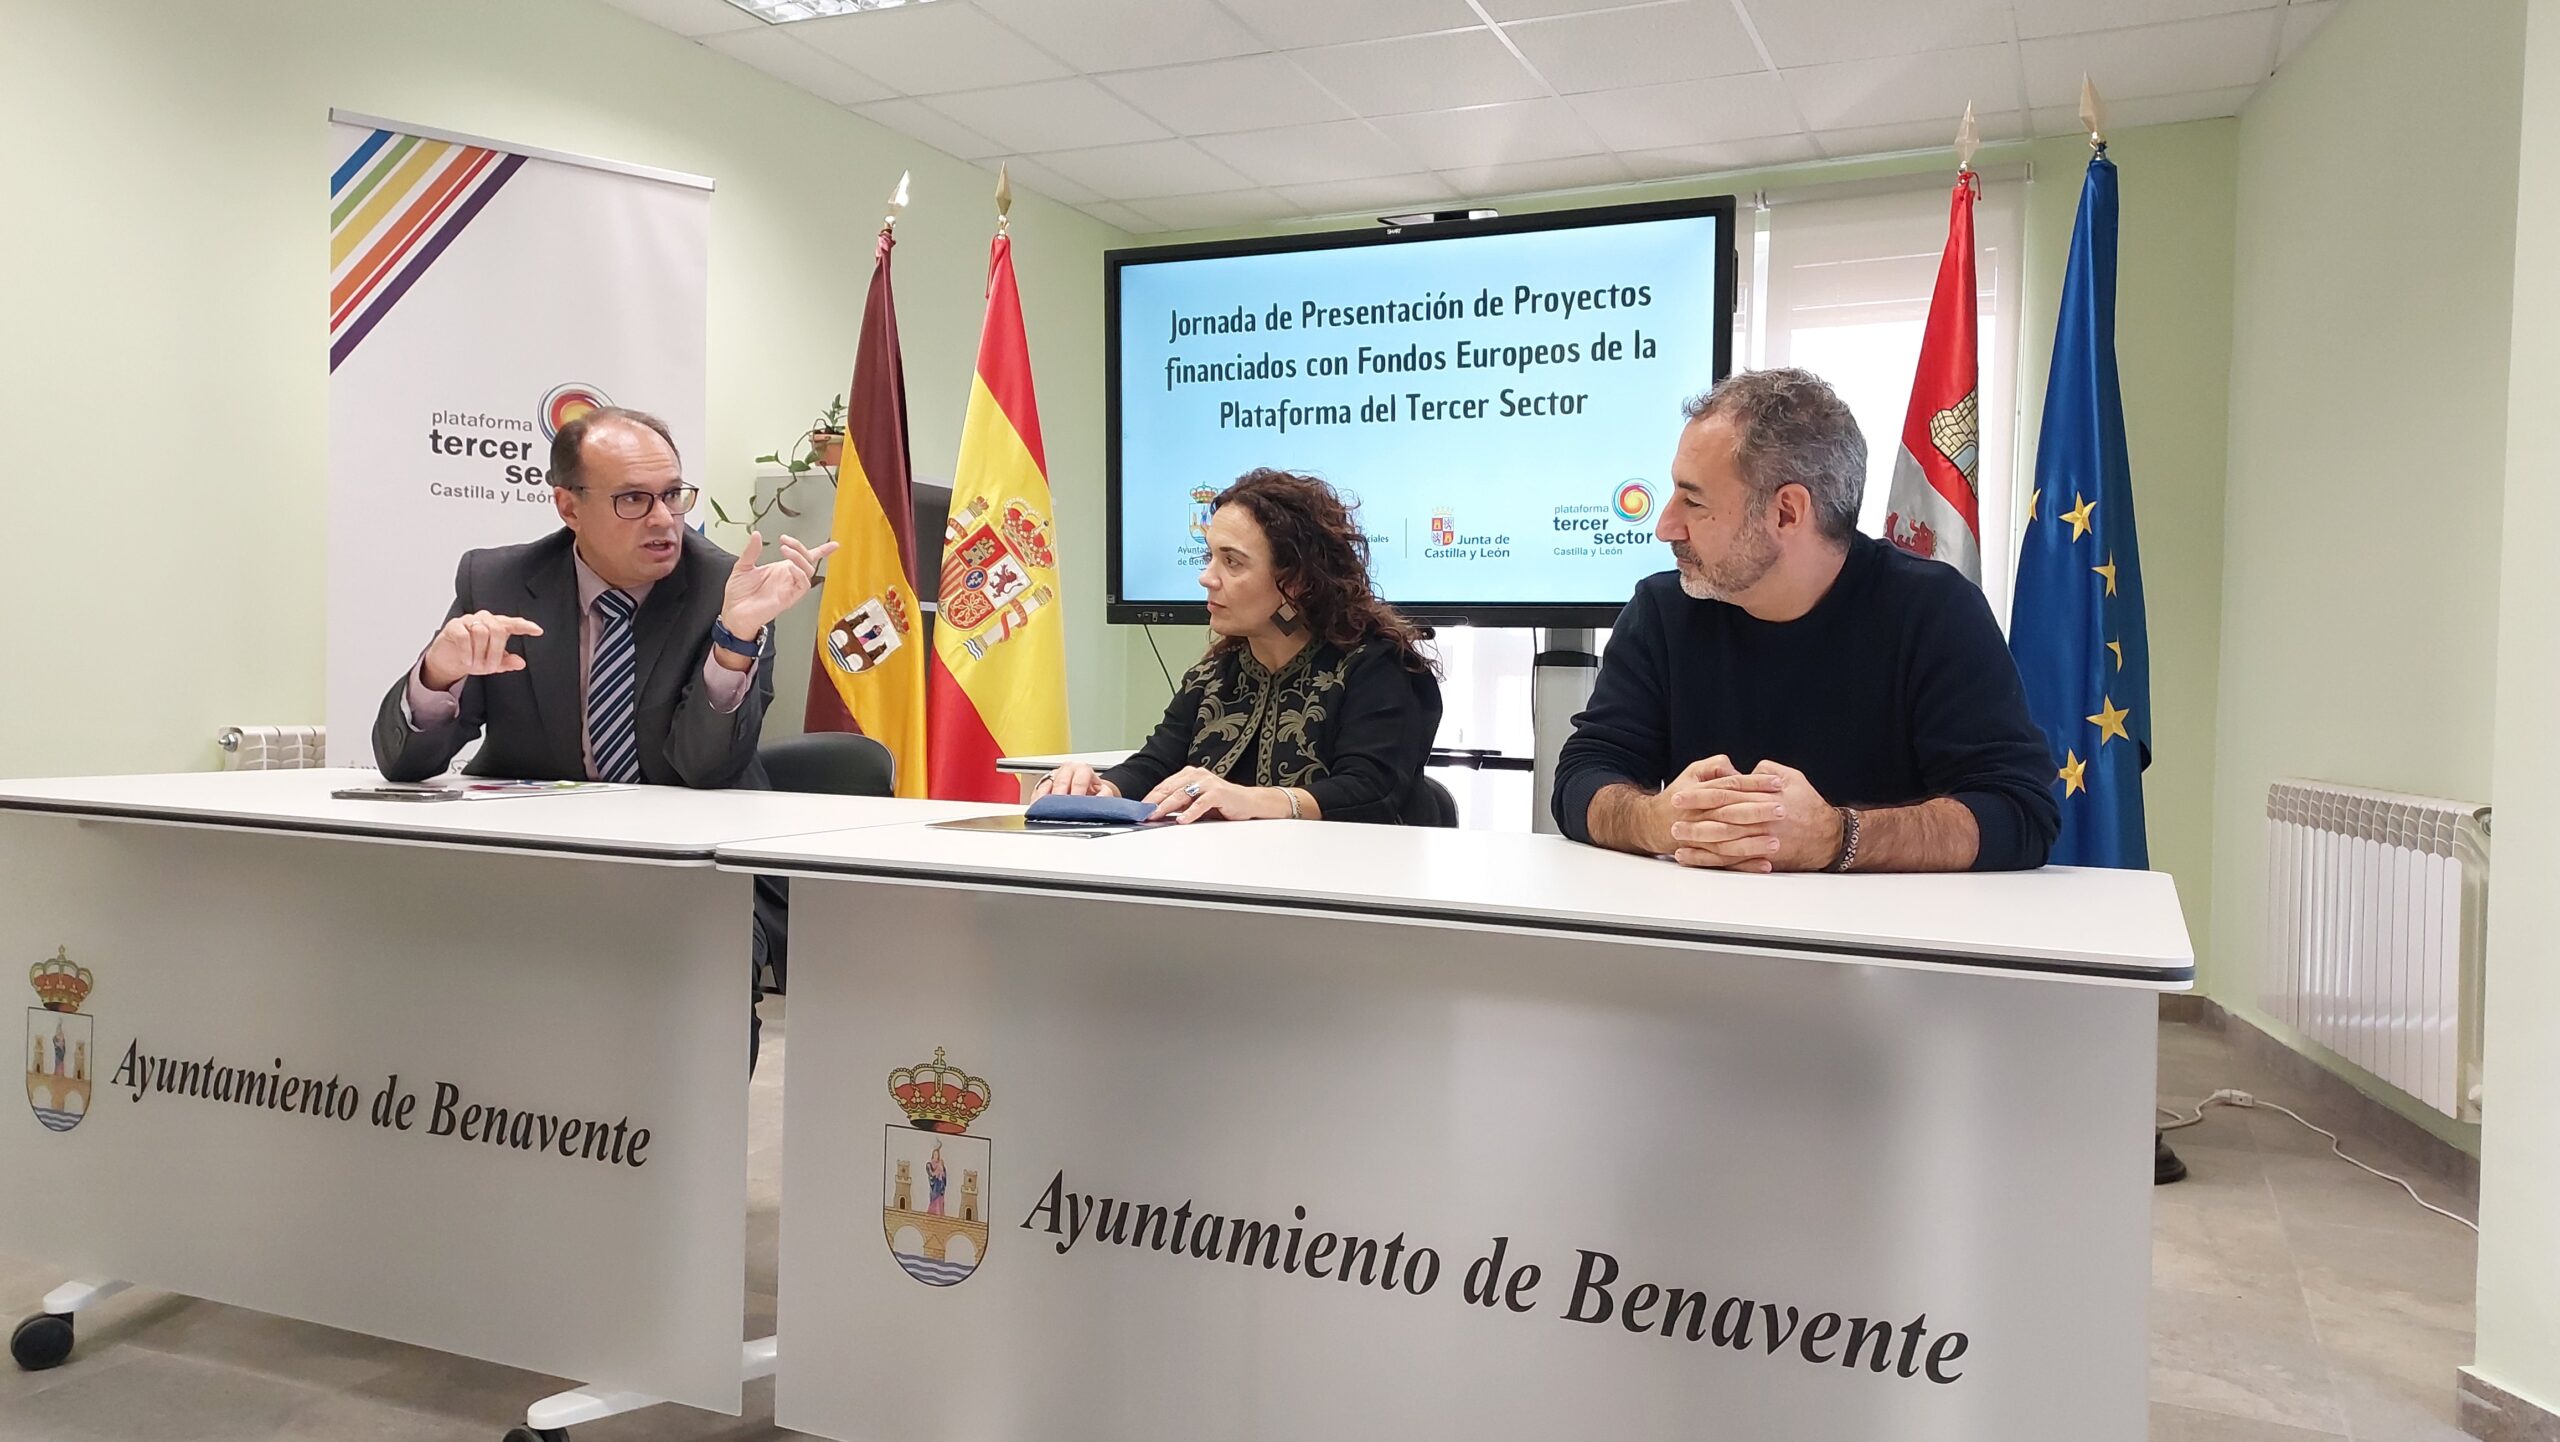 Presentamos los resultados de los Proyectos del Tercer Sector de Castilla y León Financiados con Fondos Europeos